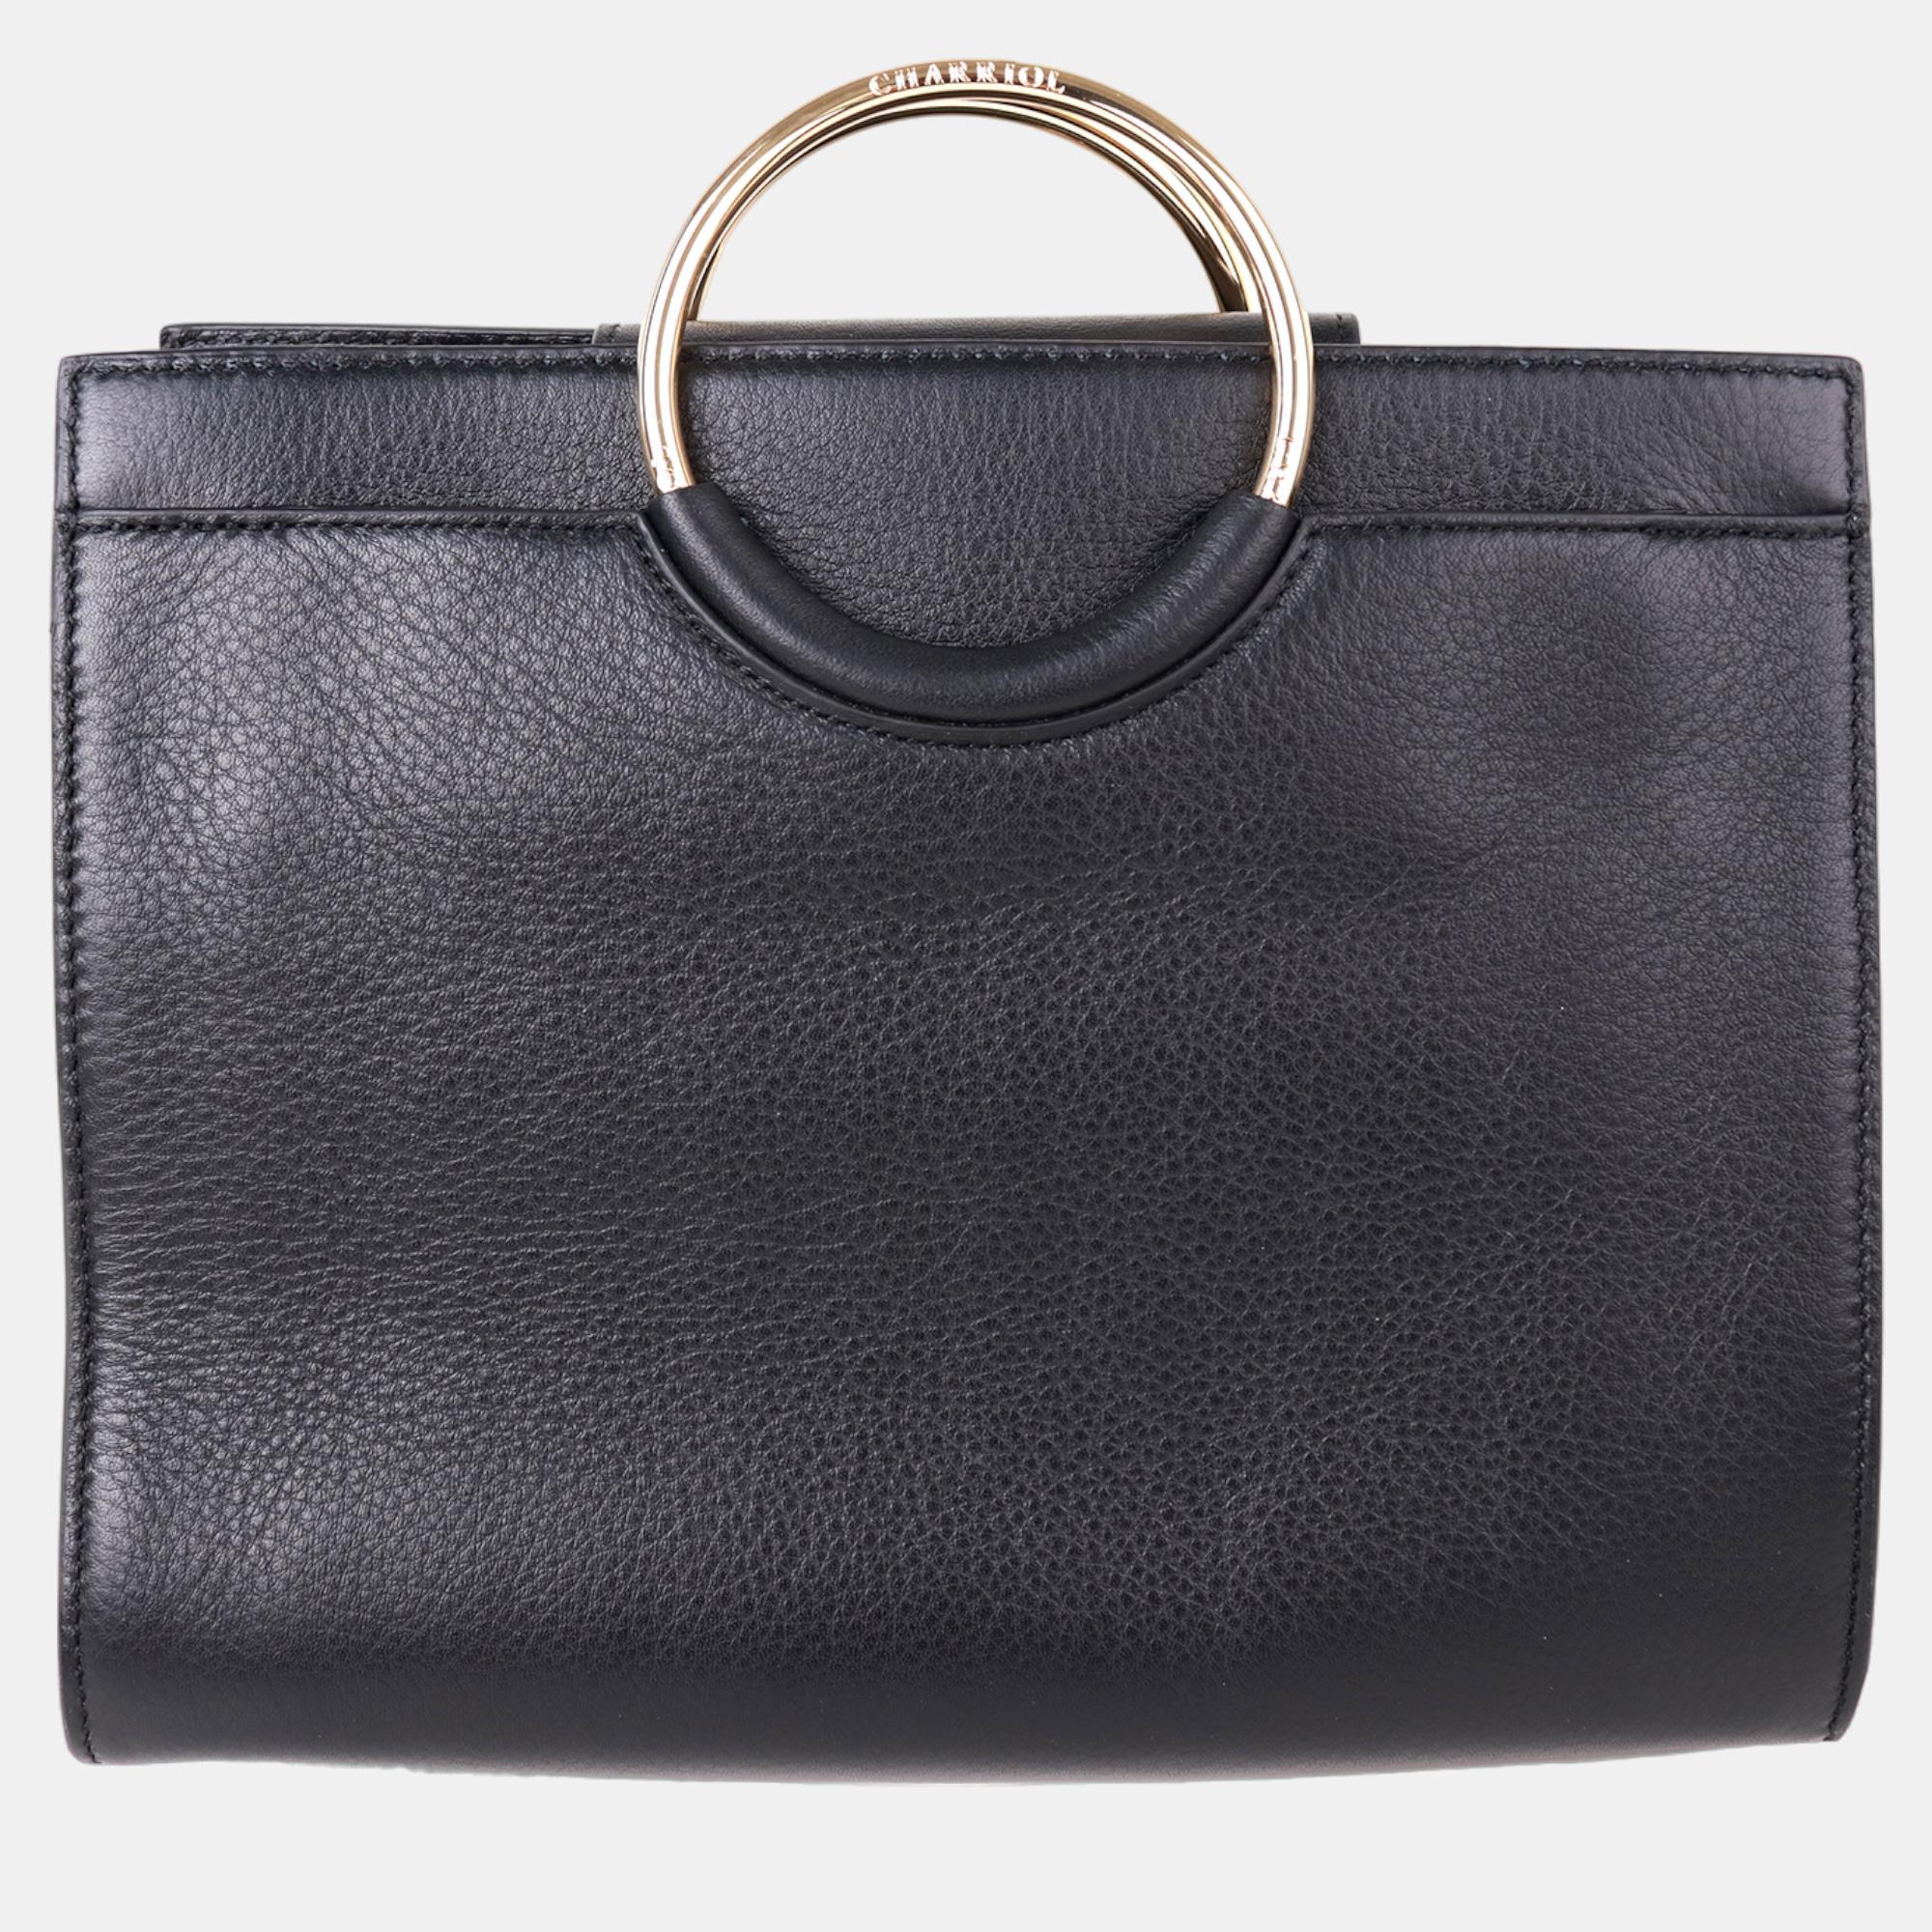 Charriol Black/Light Brown Leather Forever Handbag